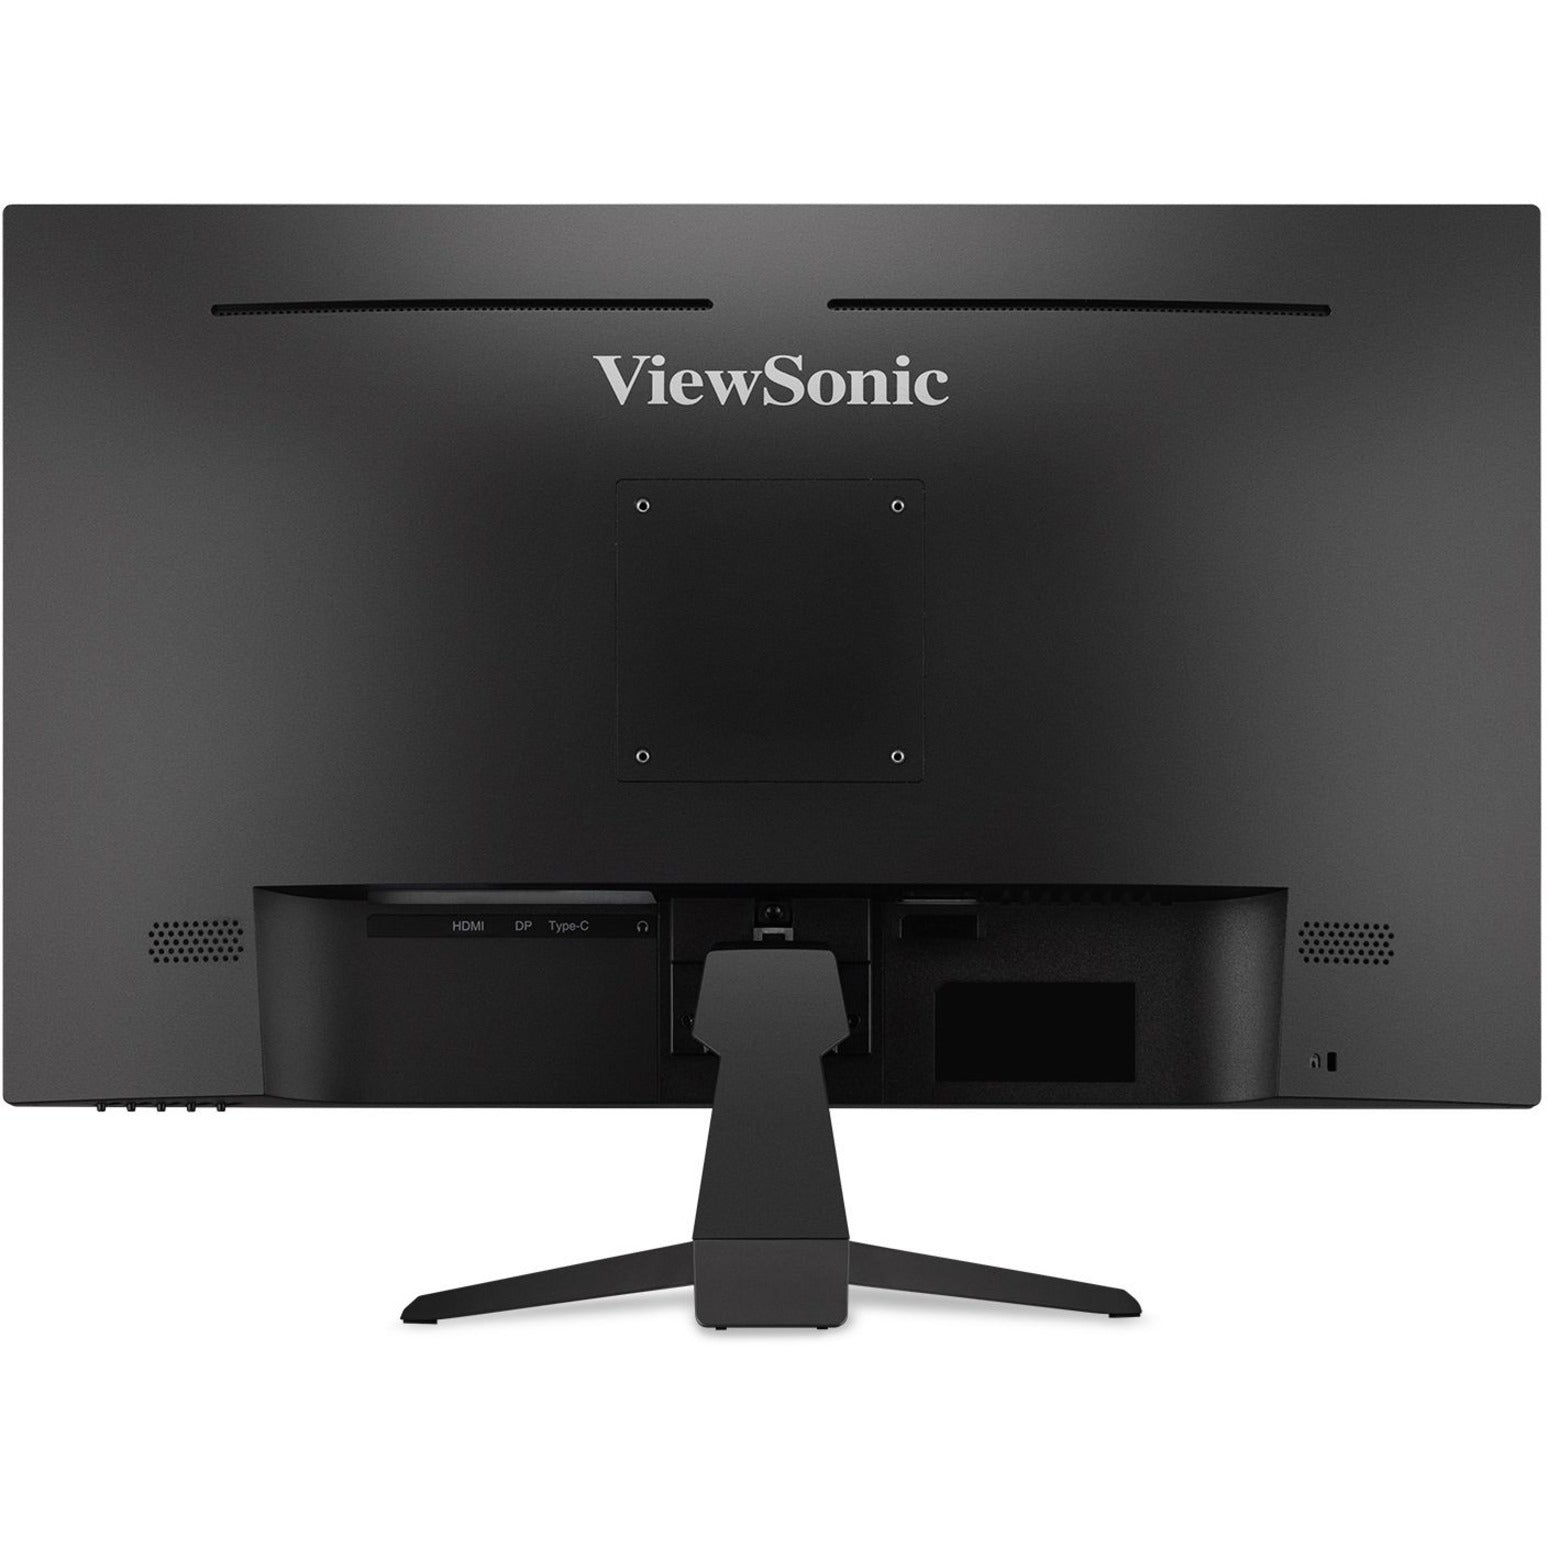 ViewSonic VX2767U-2K 27" 2K QHD Thin-Bezel IPS Monitor with USB-C, HDMI, and DisplayPort